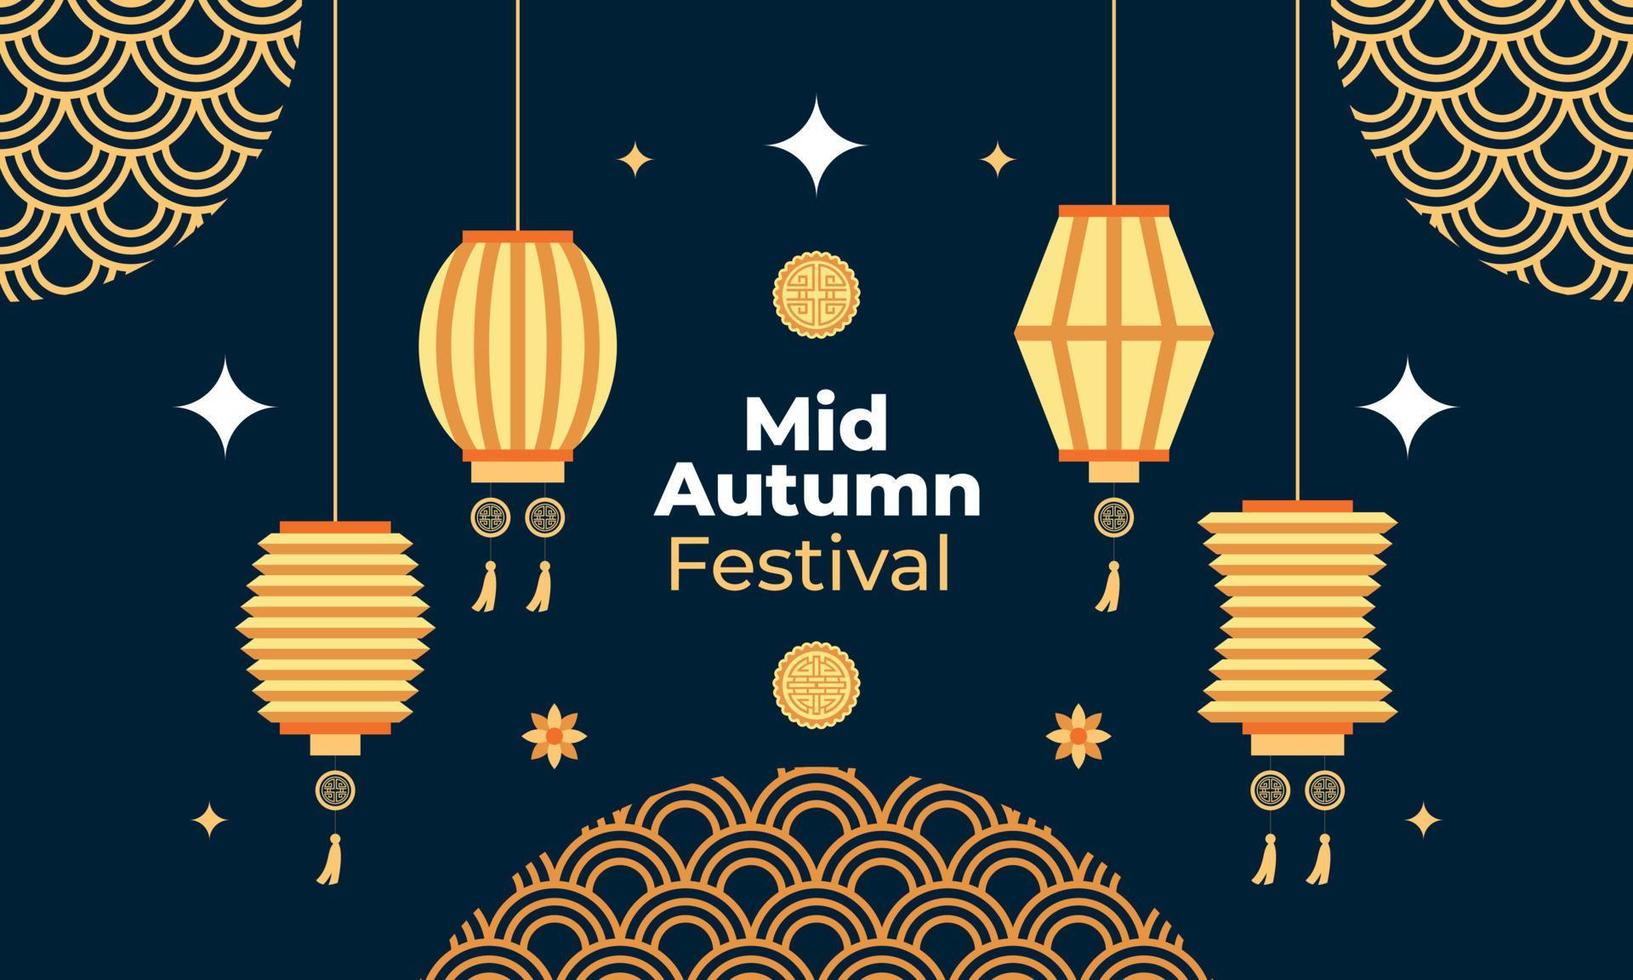 mitten av hösten festival firande illustration vektor